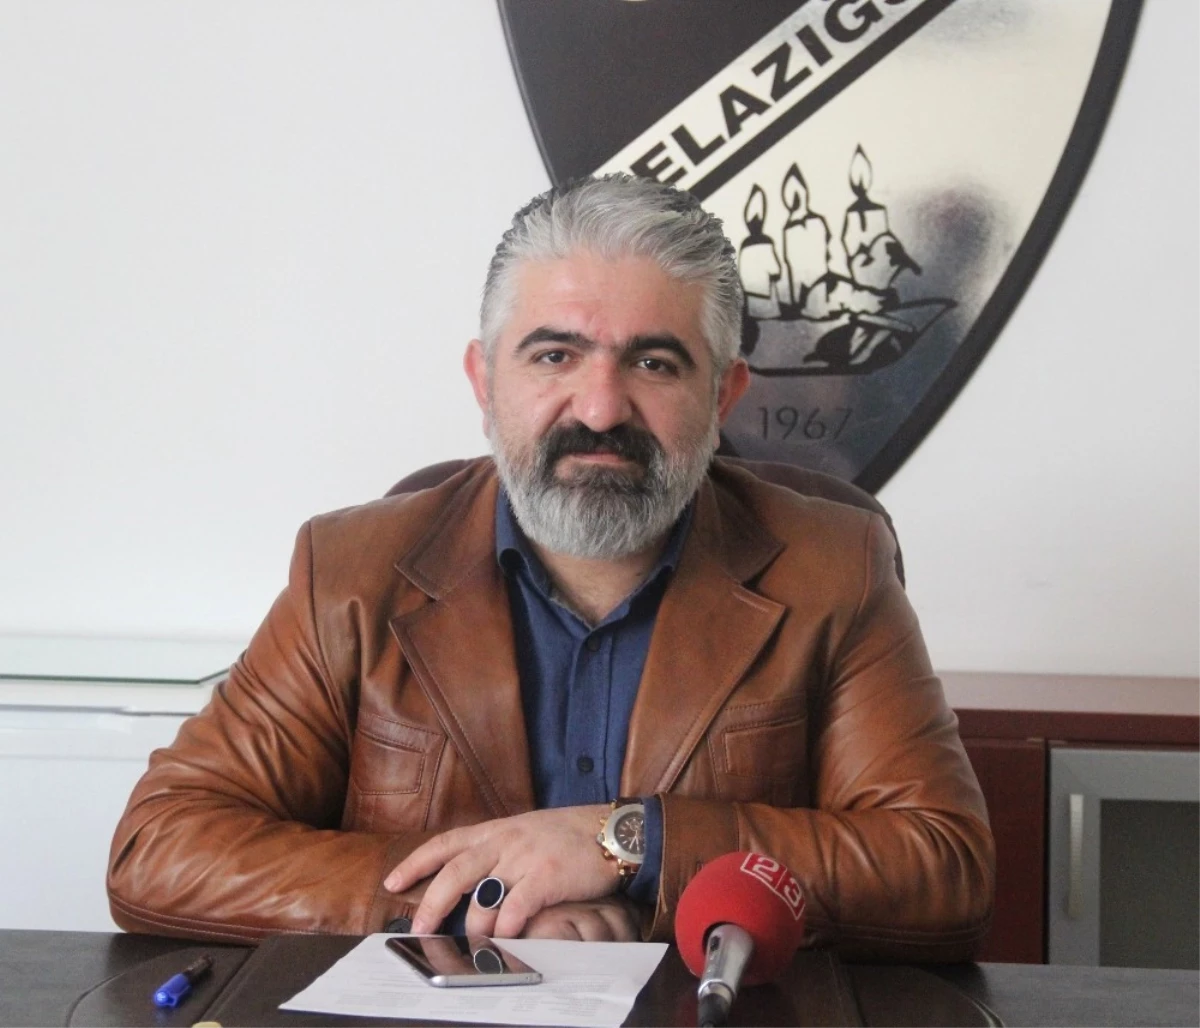 Elazığspor Basın Sözcüsü Gülaç: "Maddi Sıkıntı Devam Ediyor"